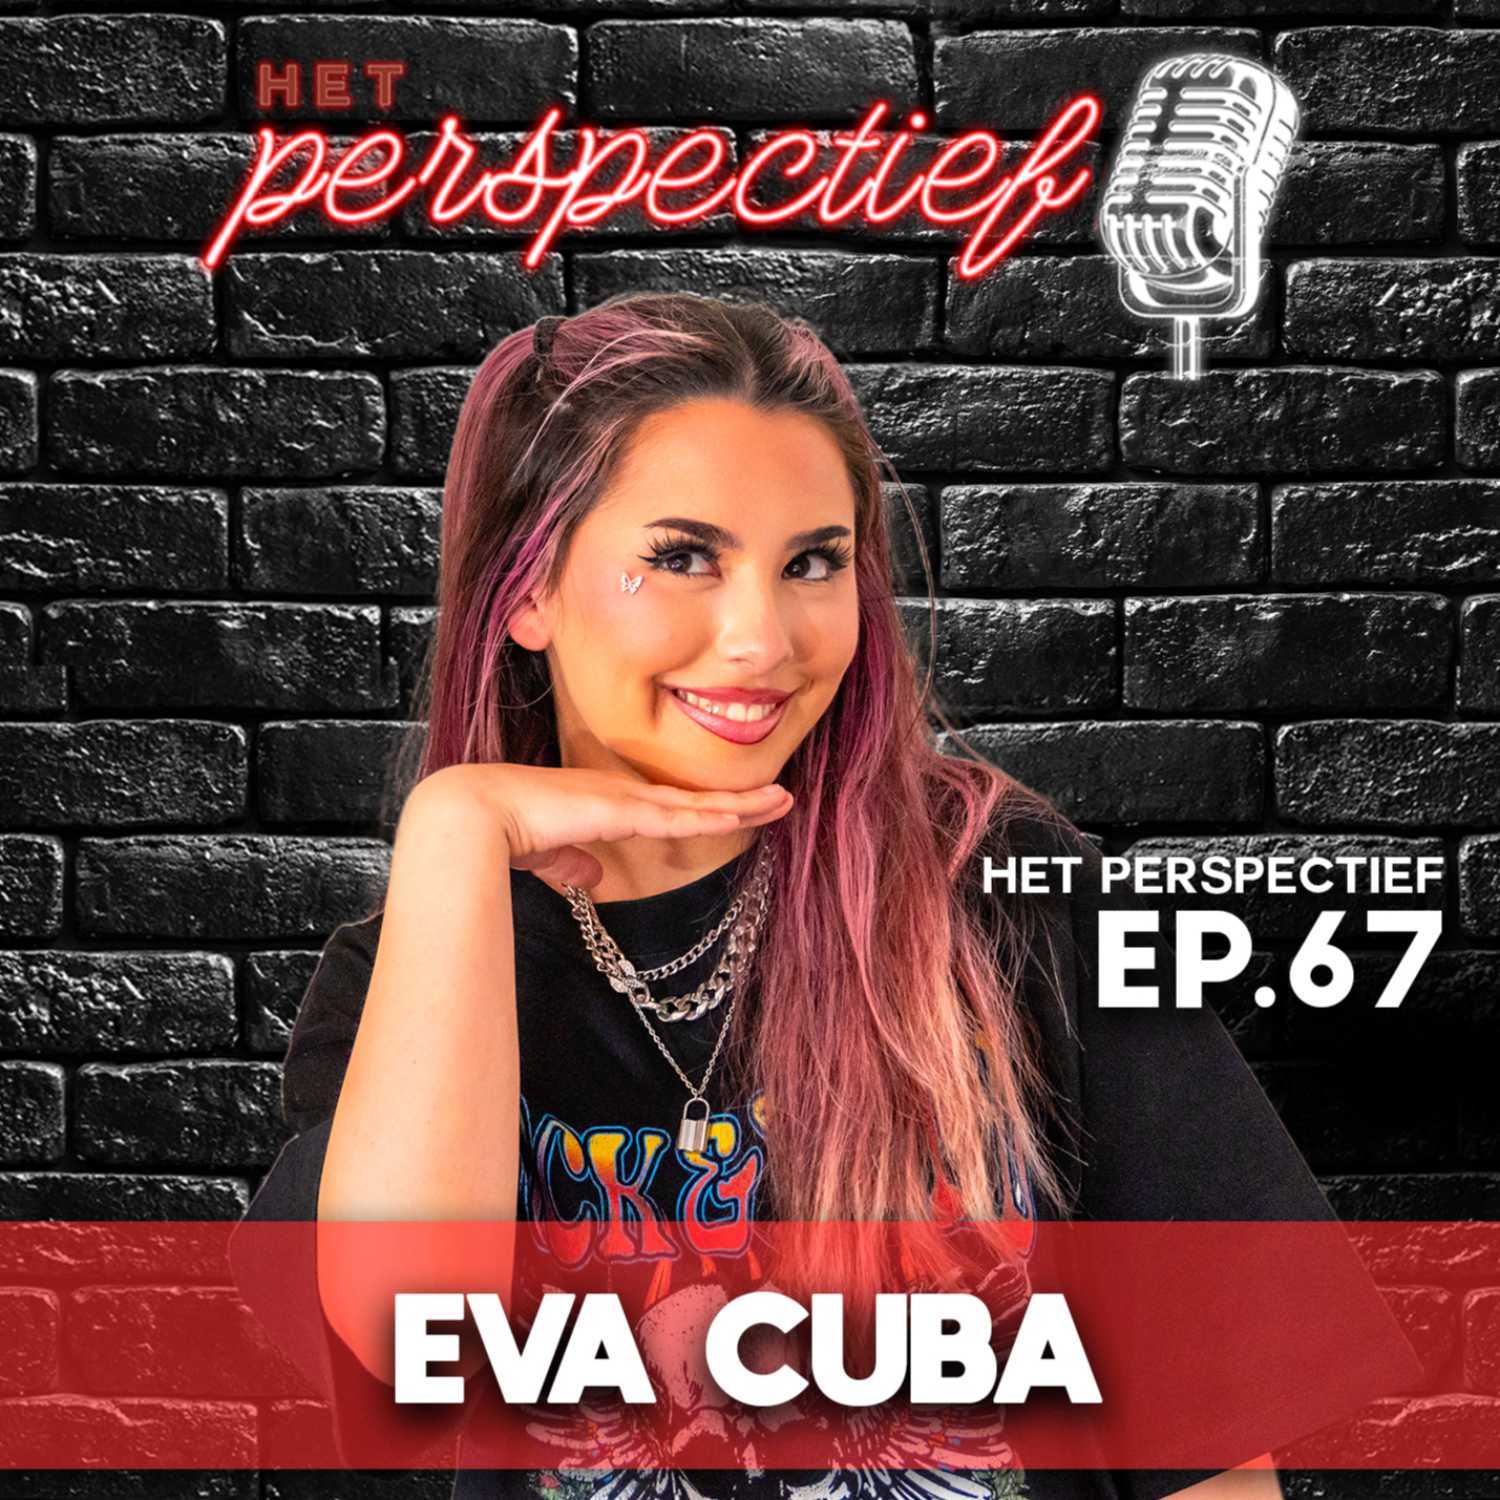 Het Perspectief van Eva Cuba, beautyinfluencer en content creator uit Antwerpen